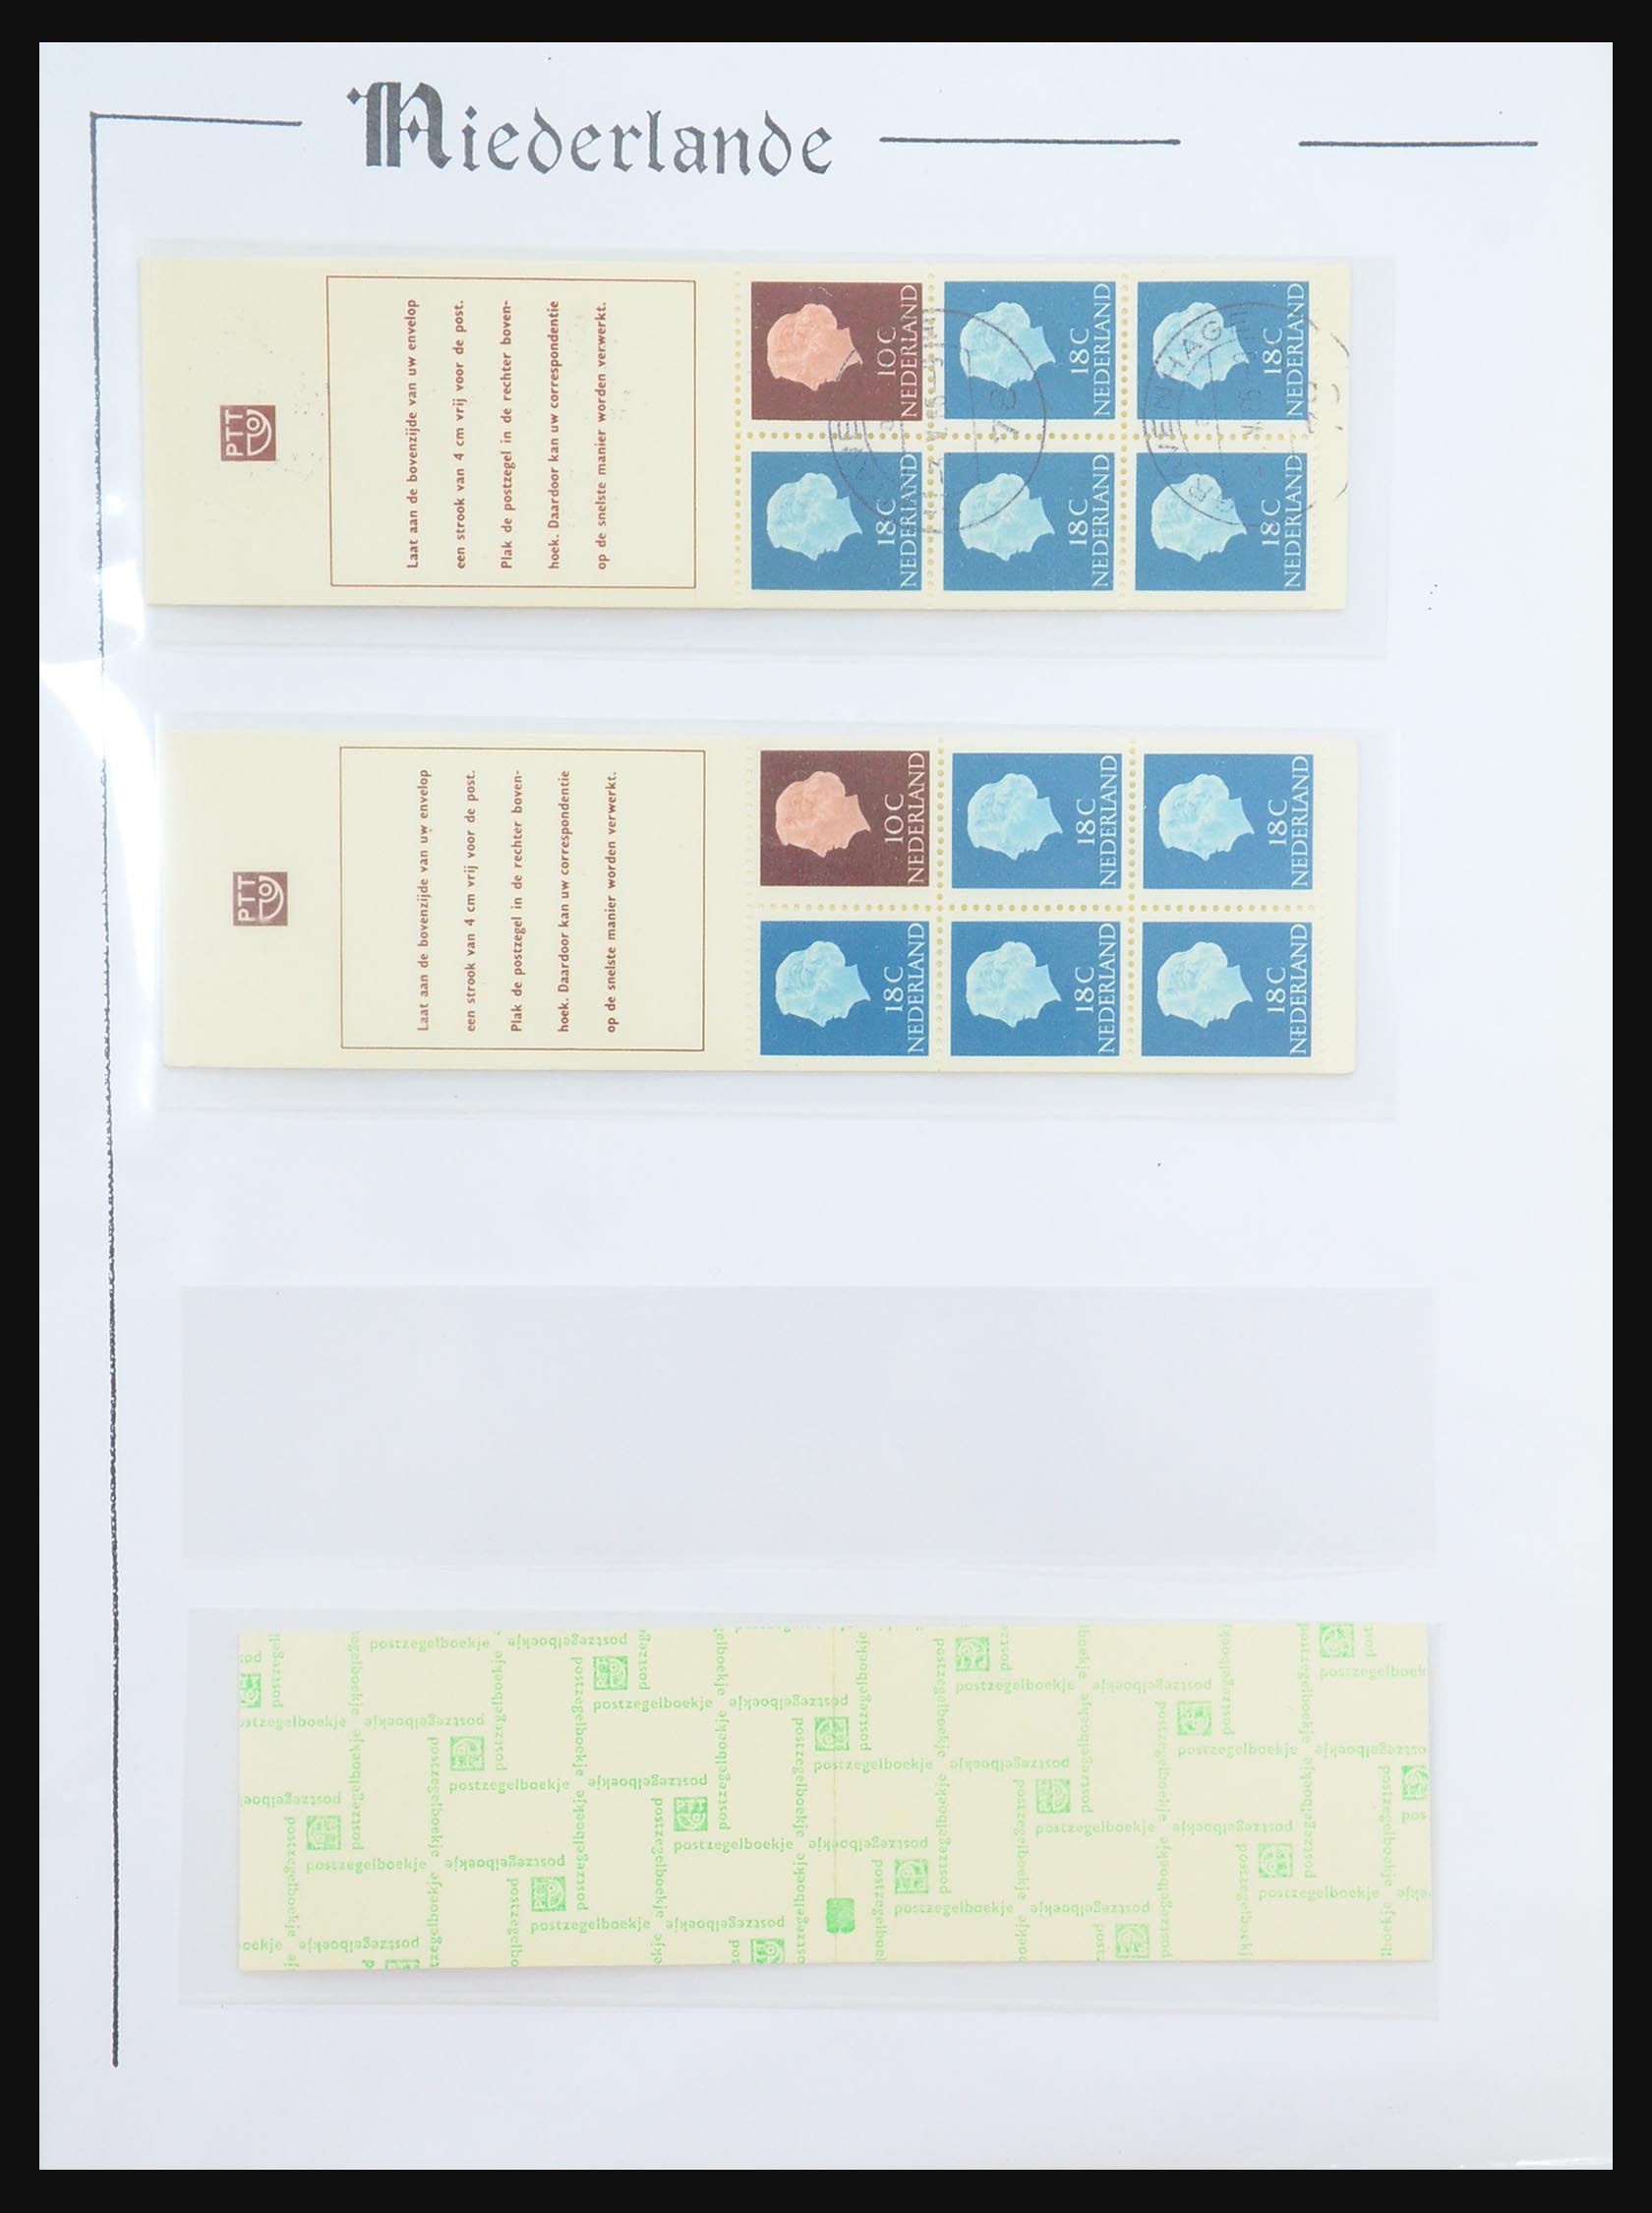 31311 006 - 31311 Netherlands stamp booklets 1964-1994.